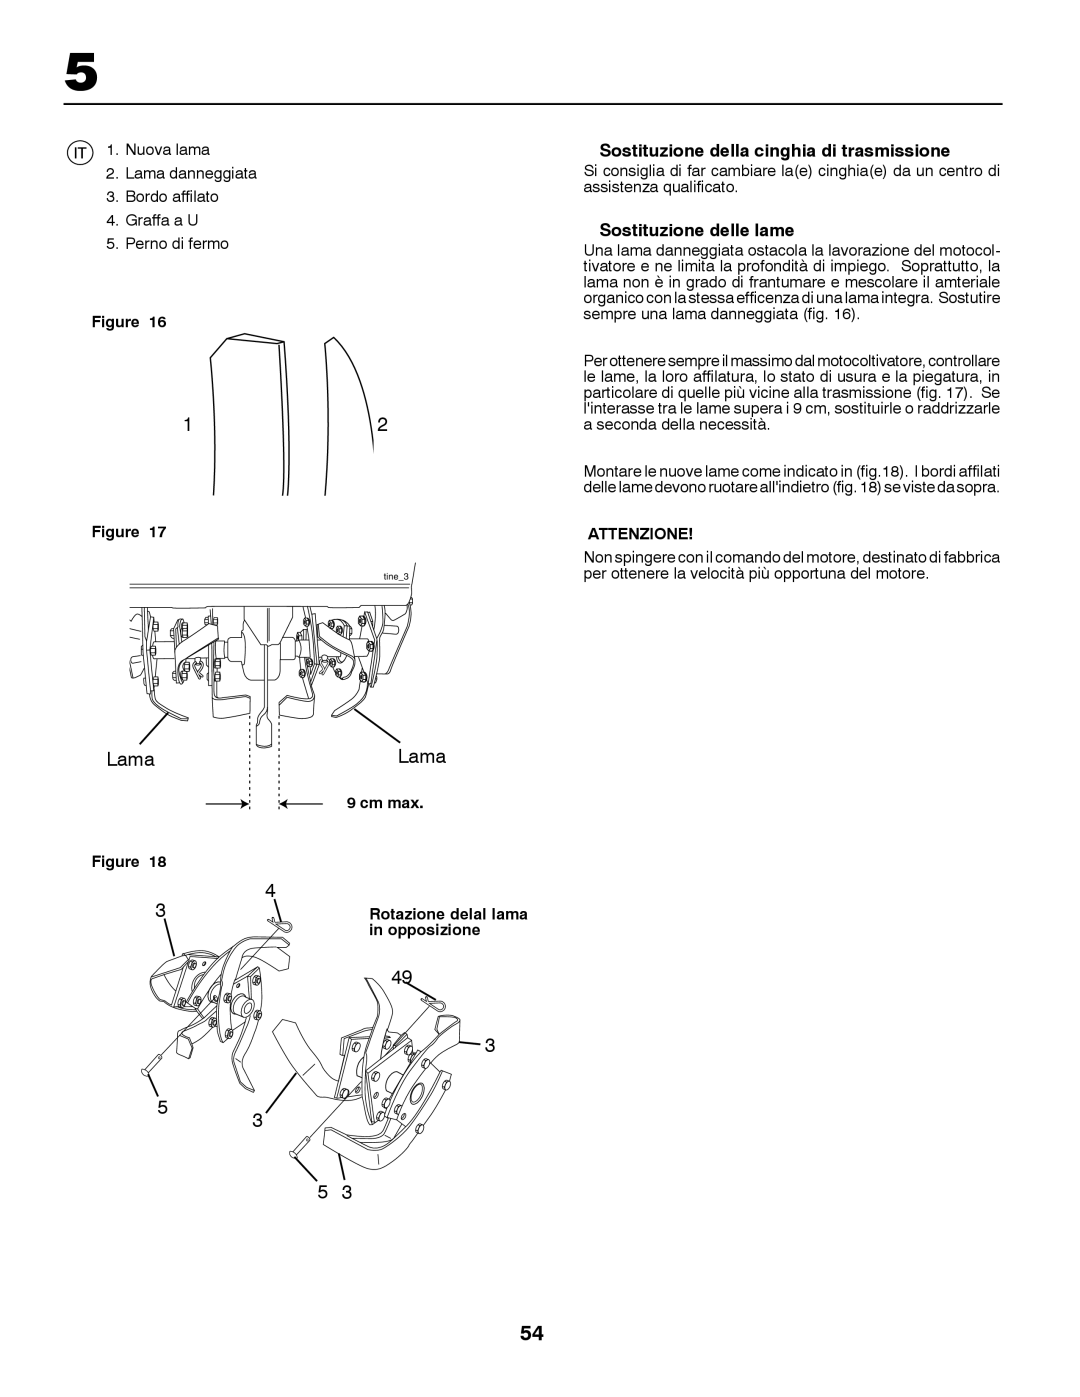 McCulloch MRT6 instruction manual Sostituzione della cinghia di trasmissione, Sostituzione delle lame 